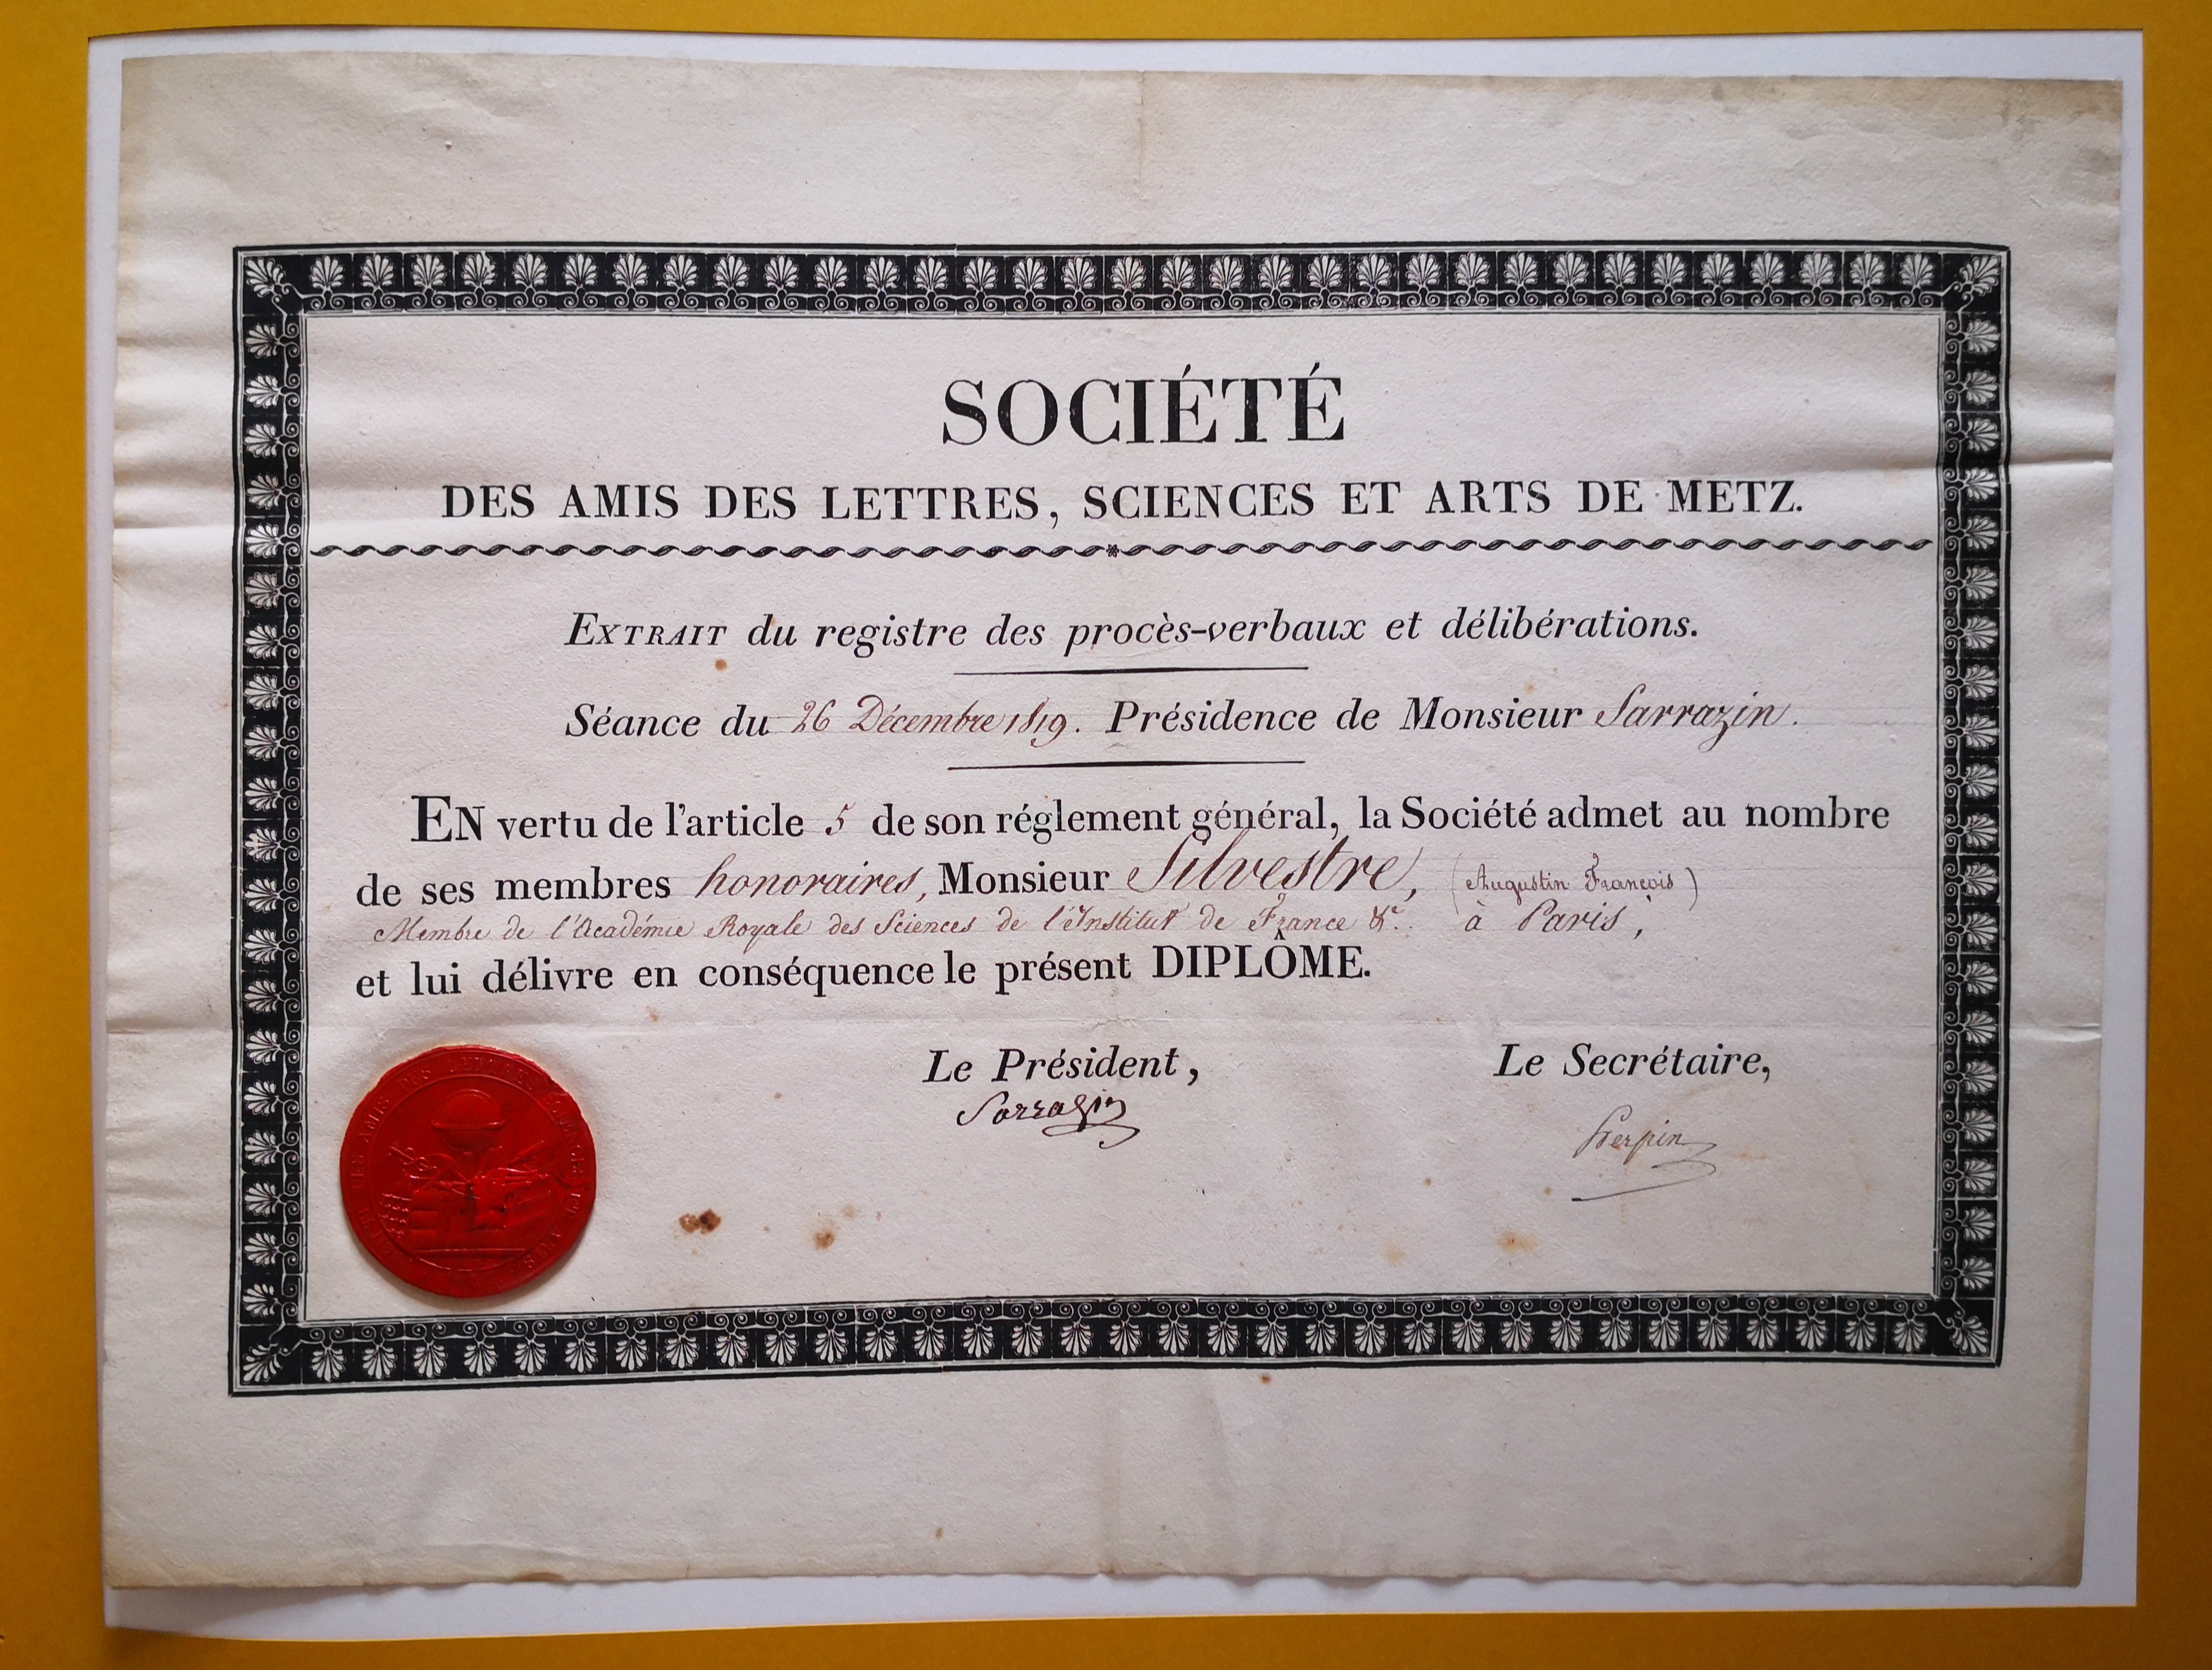  Diplôme de membre honnoraire de la Société des Amis des Lettres, Sciences et Arts de Metz décerné à Augustin-François de Silvestre - Diplôme